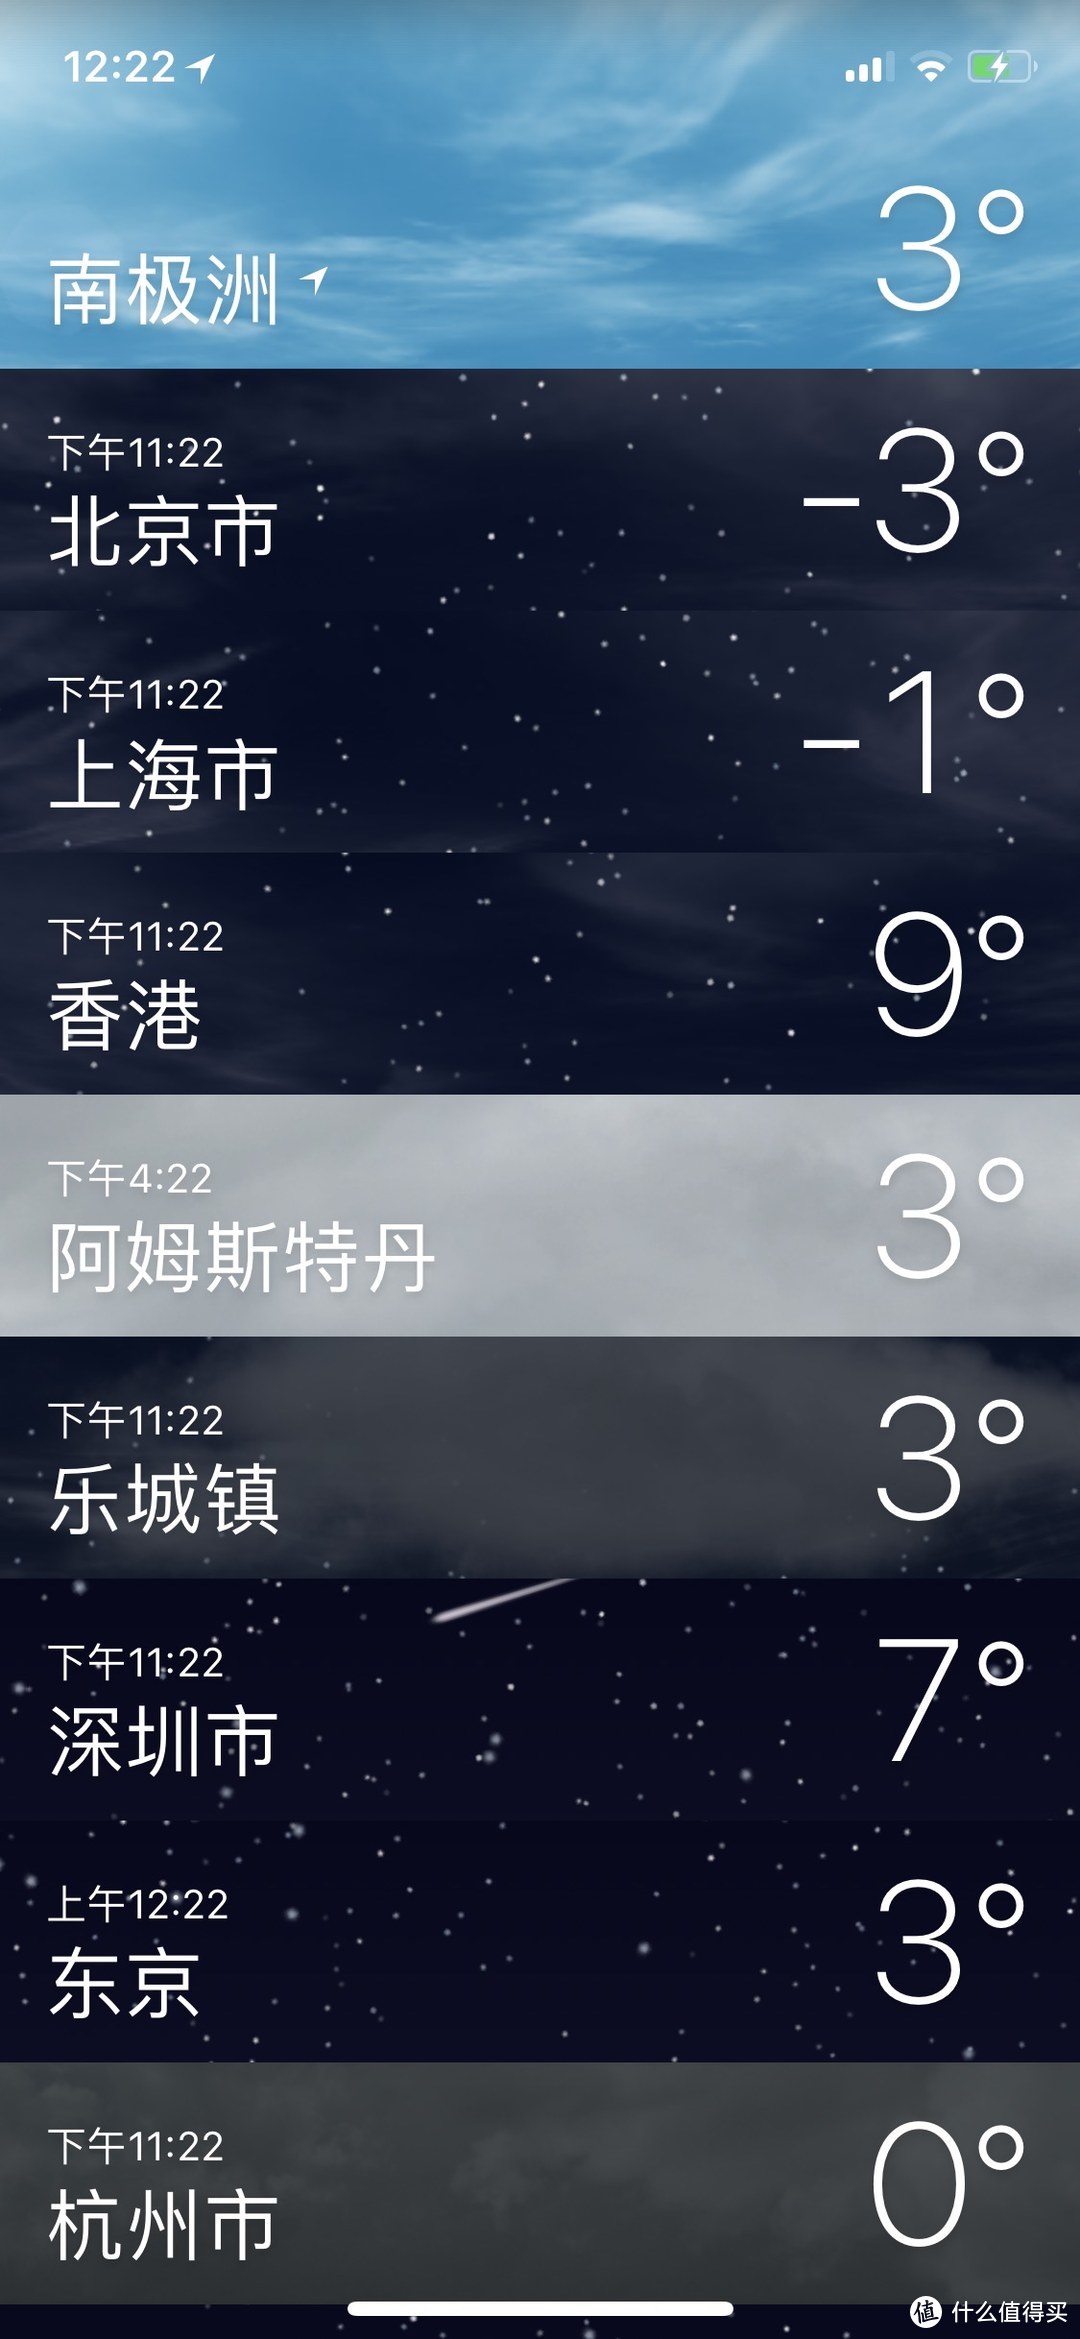 连同时期的北京都比南极要冷很多